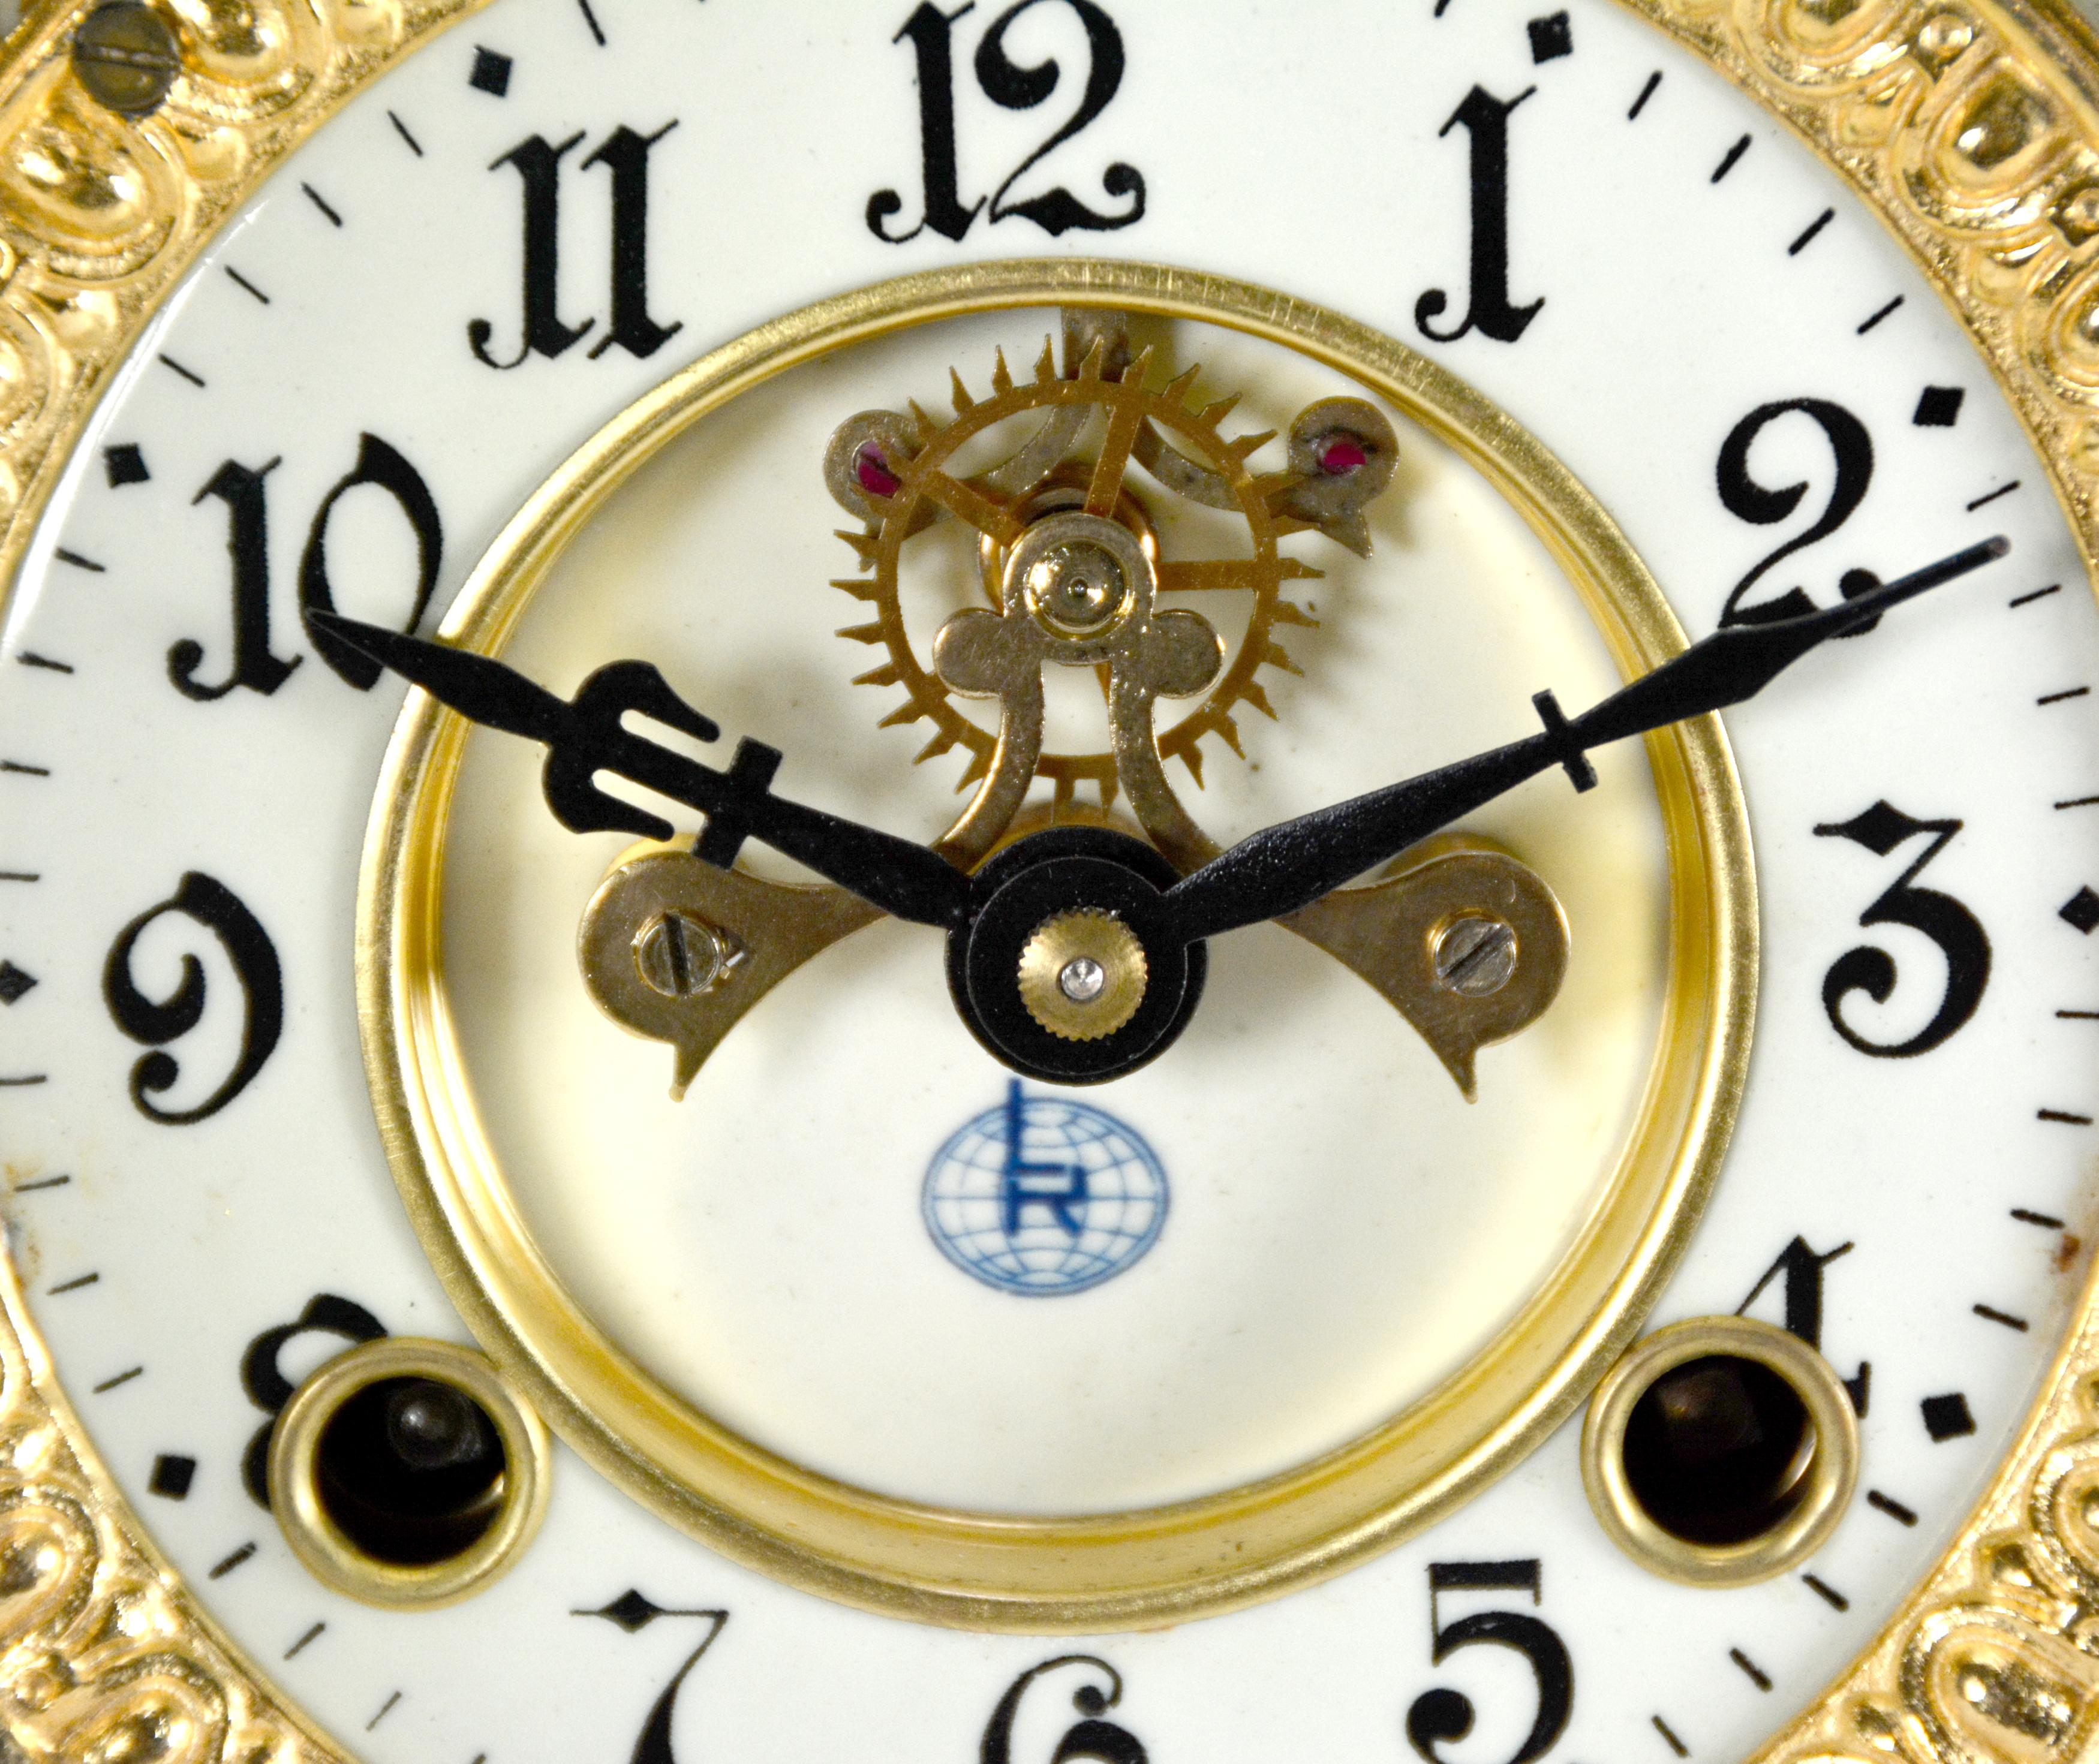 Ansonia Style Visible Escapement Pink & Blue Floral 24K Porcelain Mantle Clock For Sale 3